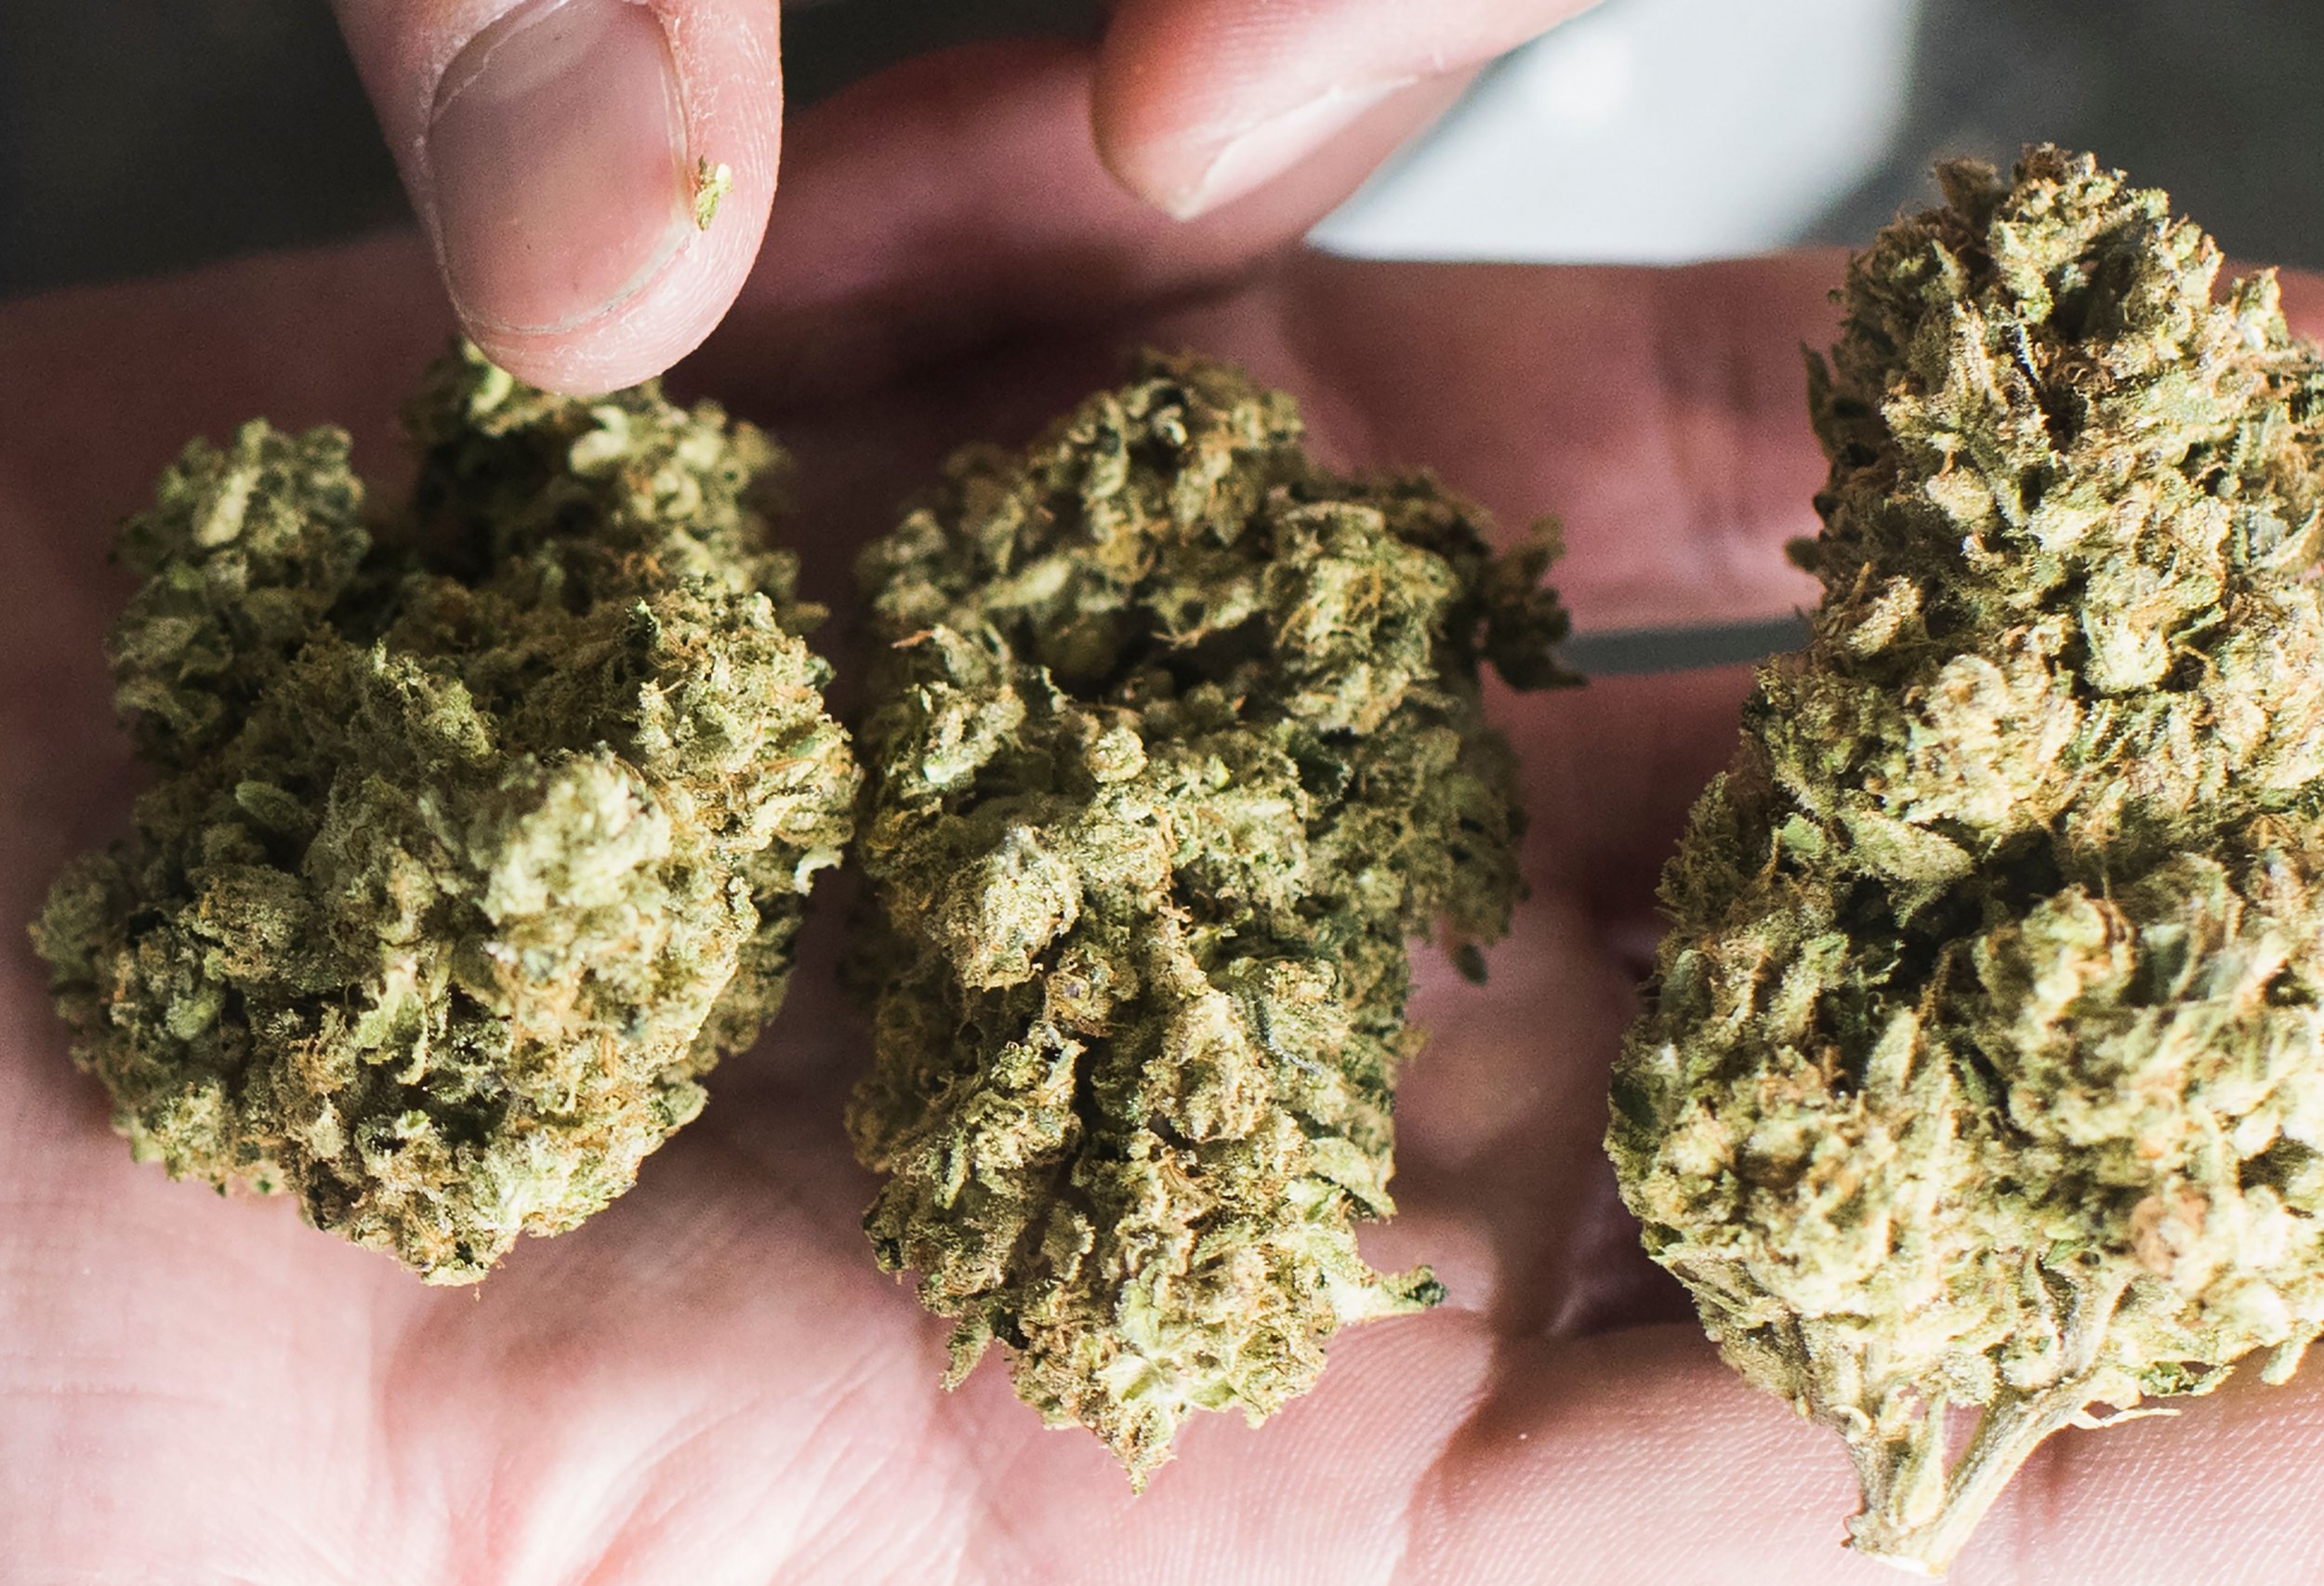 Чат любителей марихуаны 30 кг наркотиков